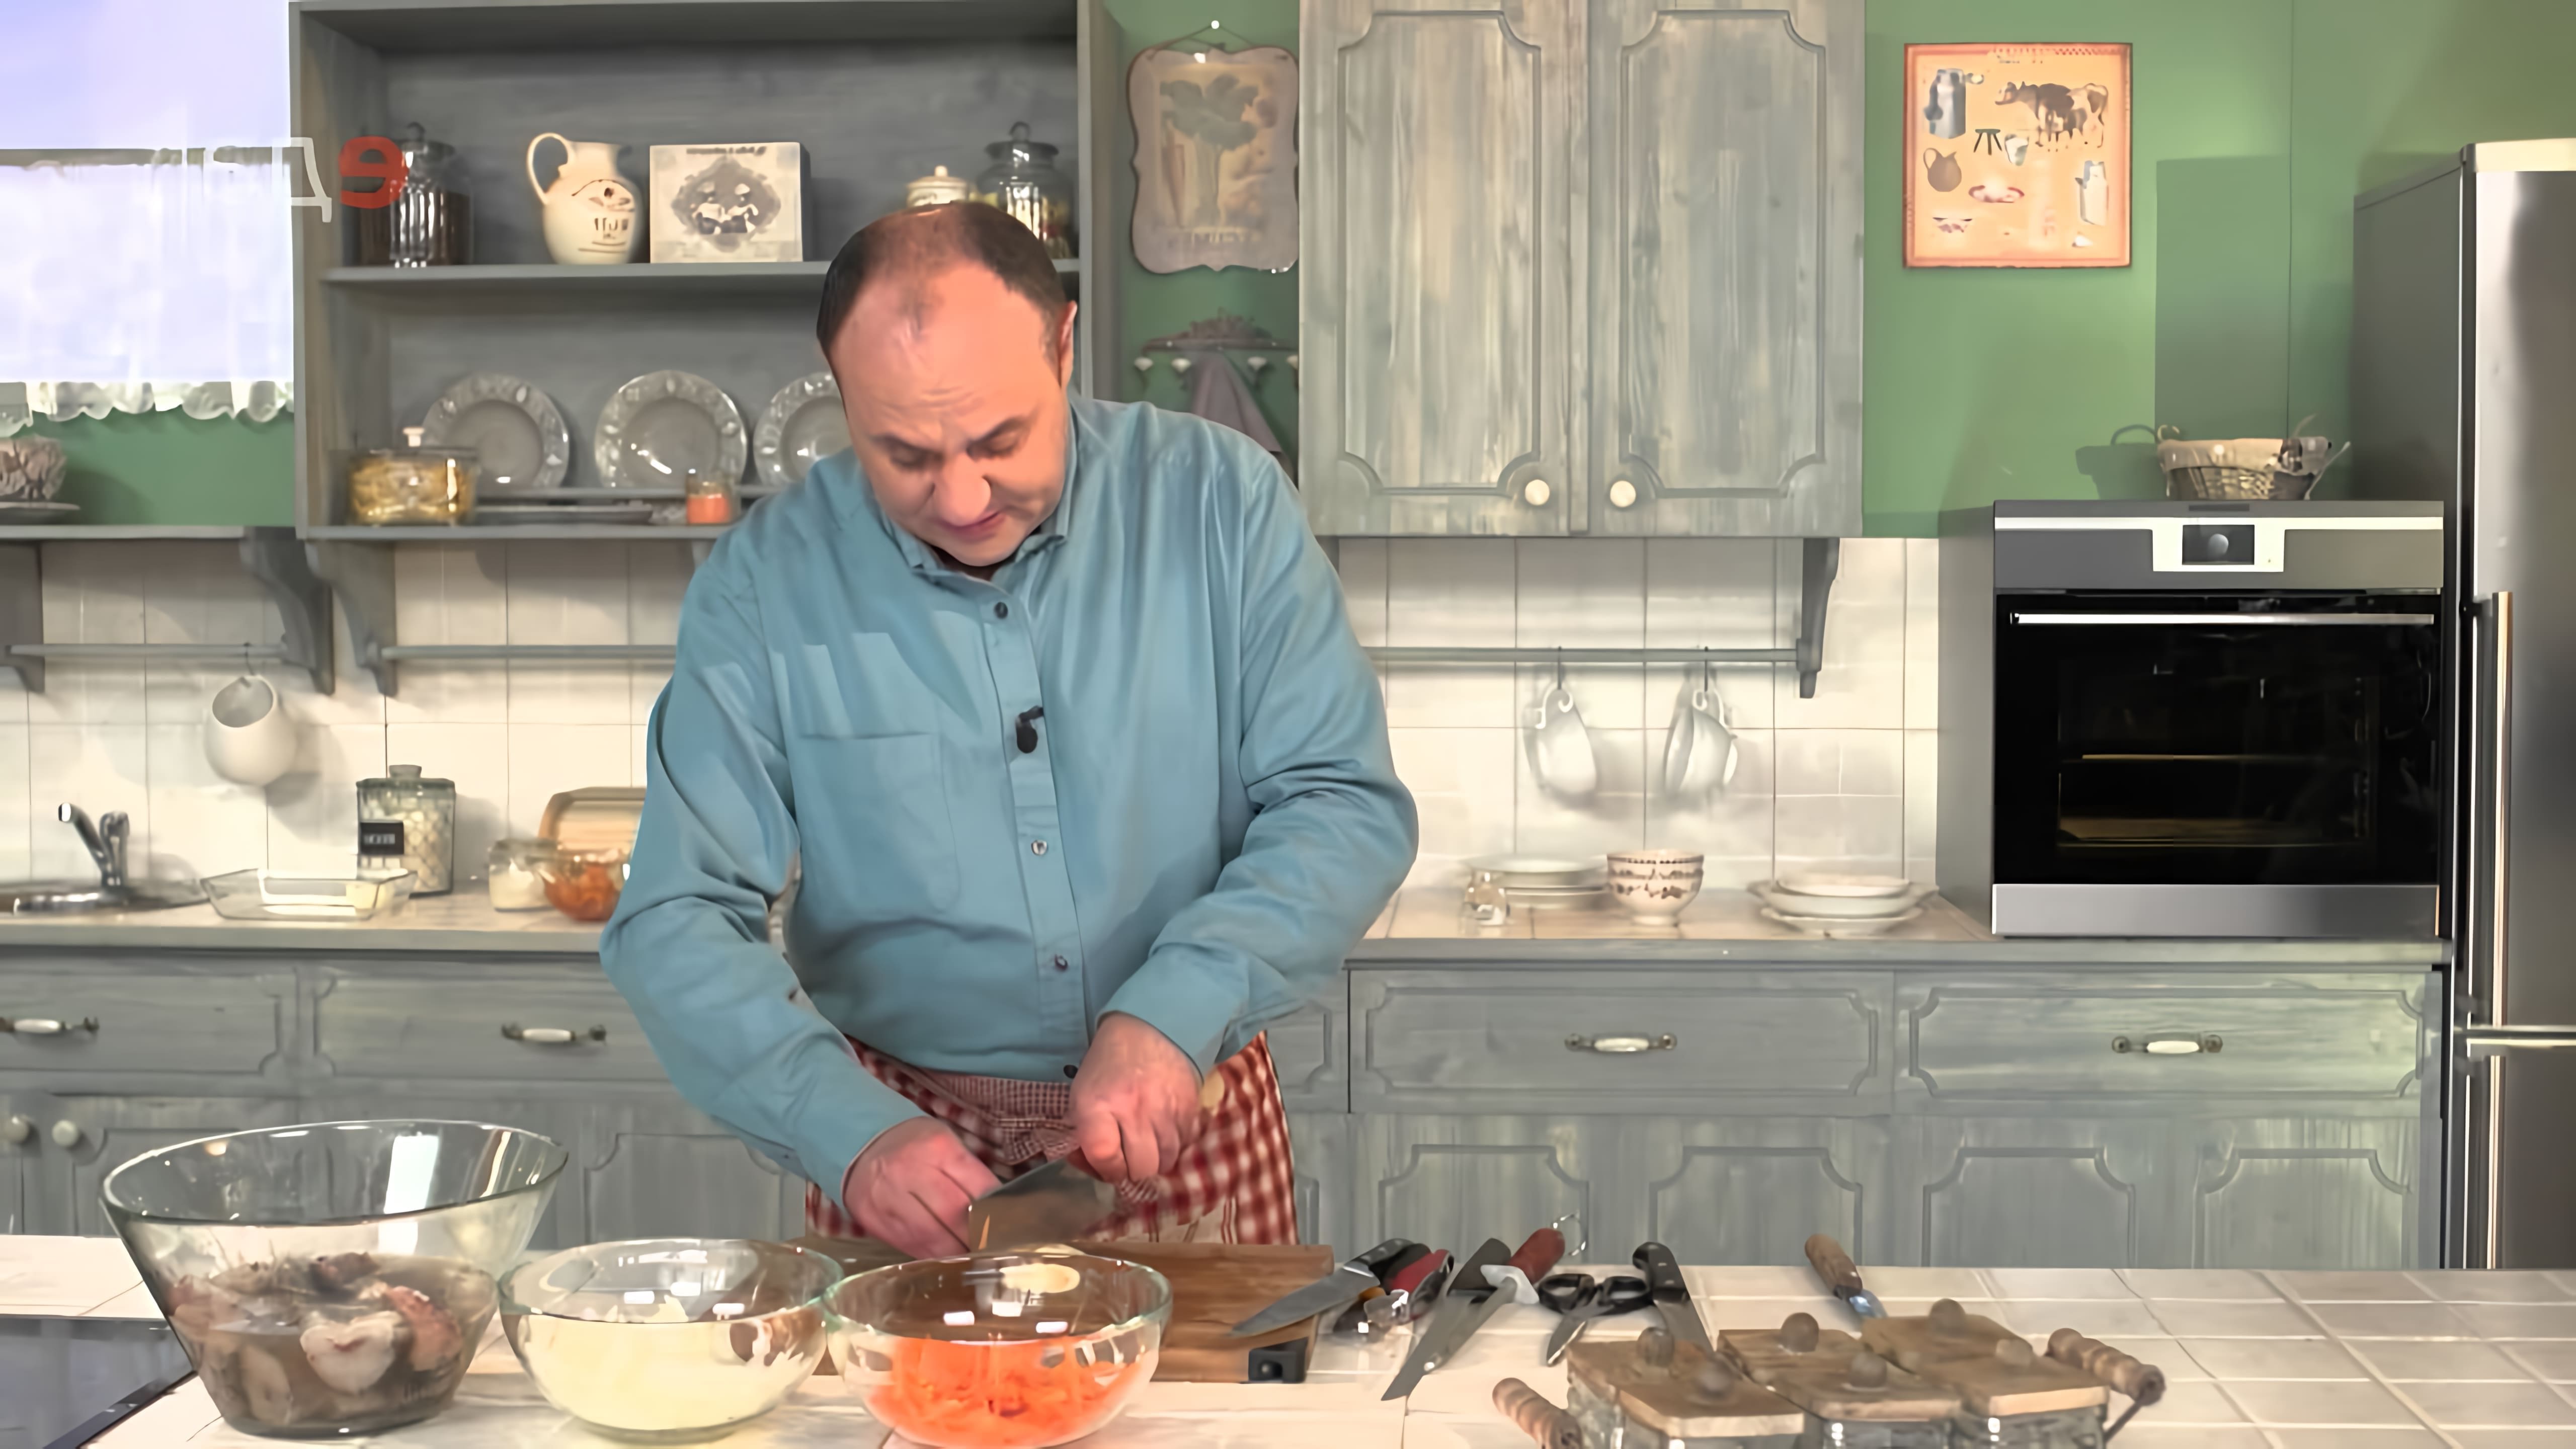 Видео посвящено приготовлению маринованной рыбы, которую ведущий называет любимым блюдом для приготовления во время встреч с мужскими друзьями